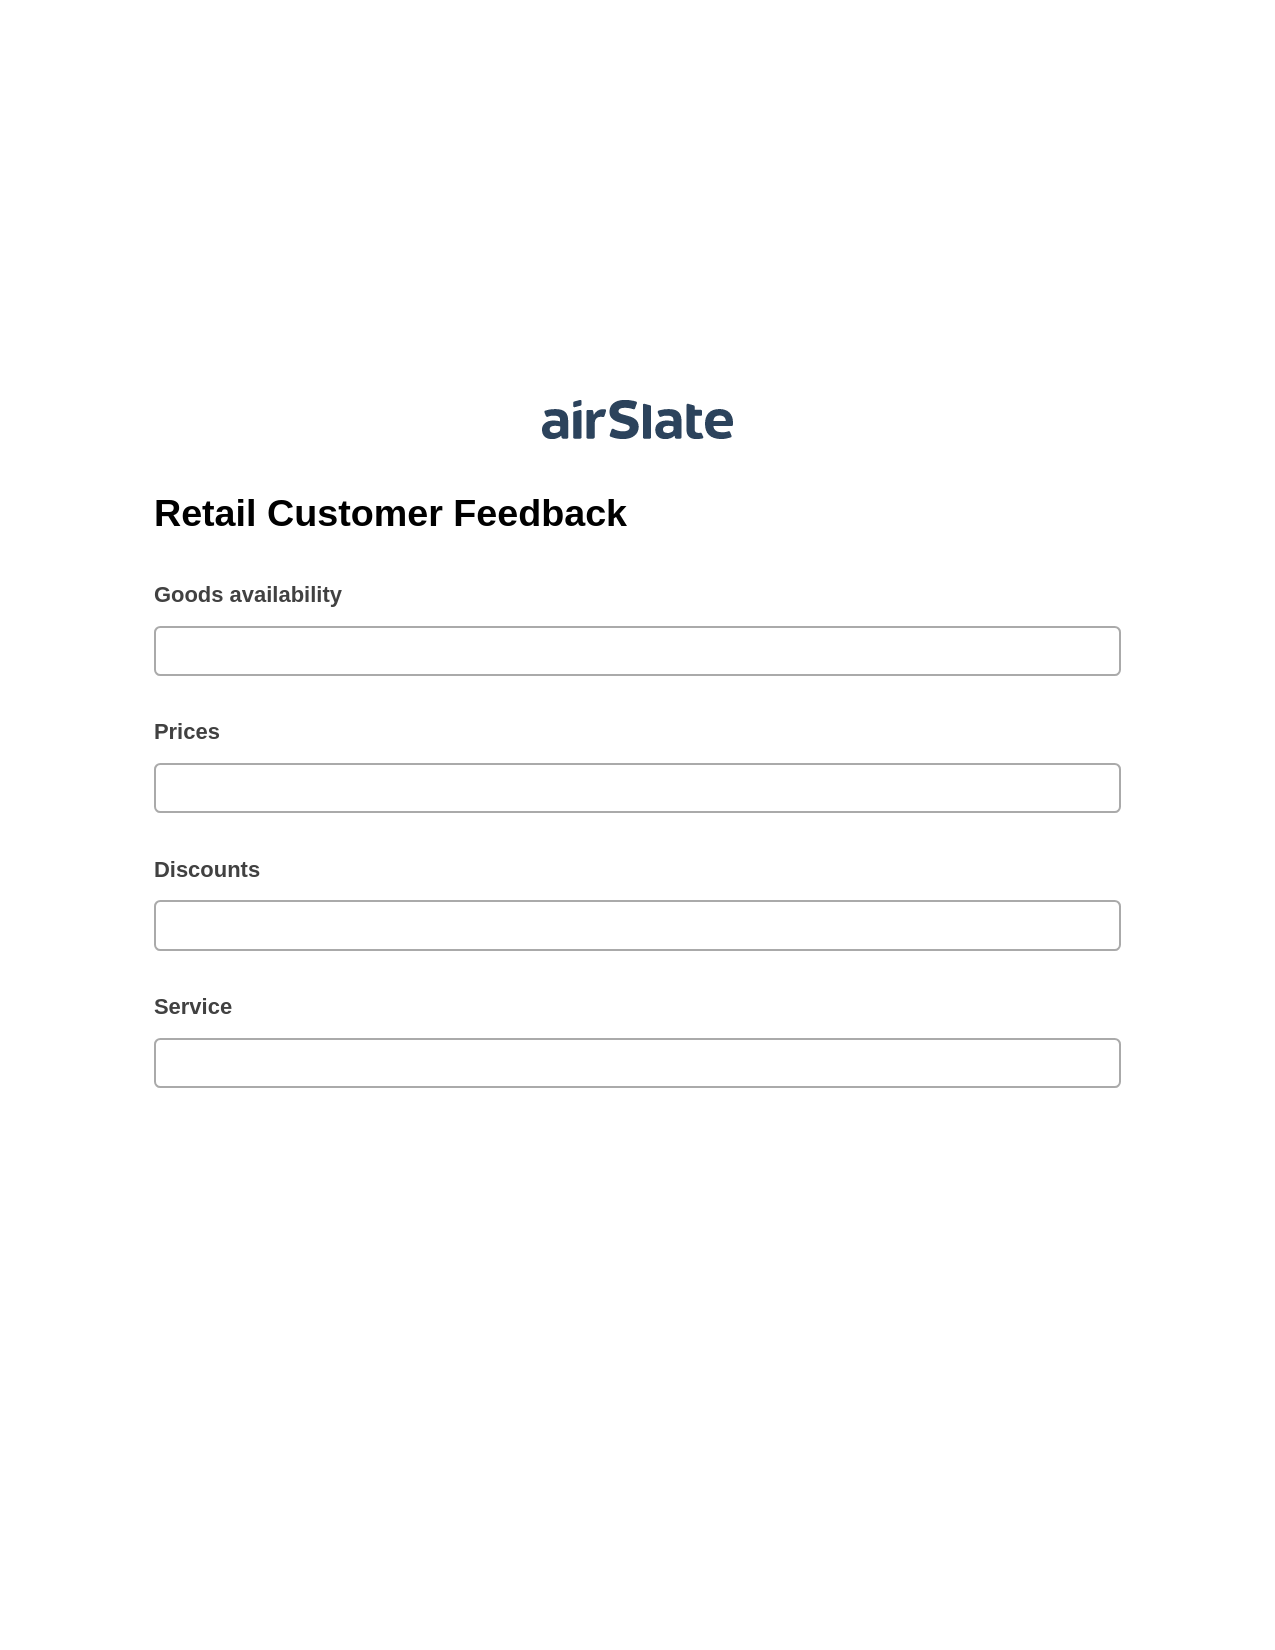 Multirole Retail Customer Feedback Pre-fill from CSV File Bot, Reminder Bot, Slack Notification Postfinish Bot